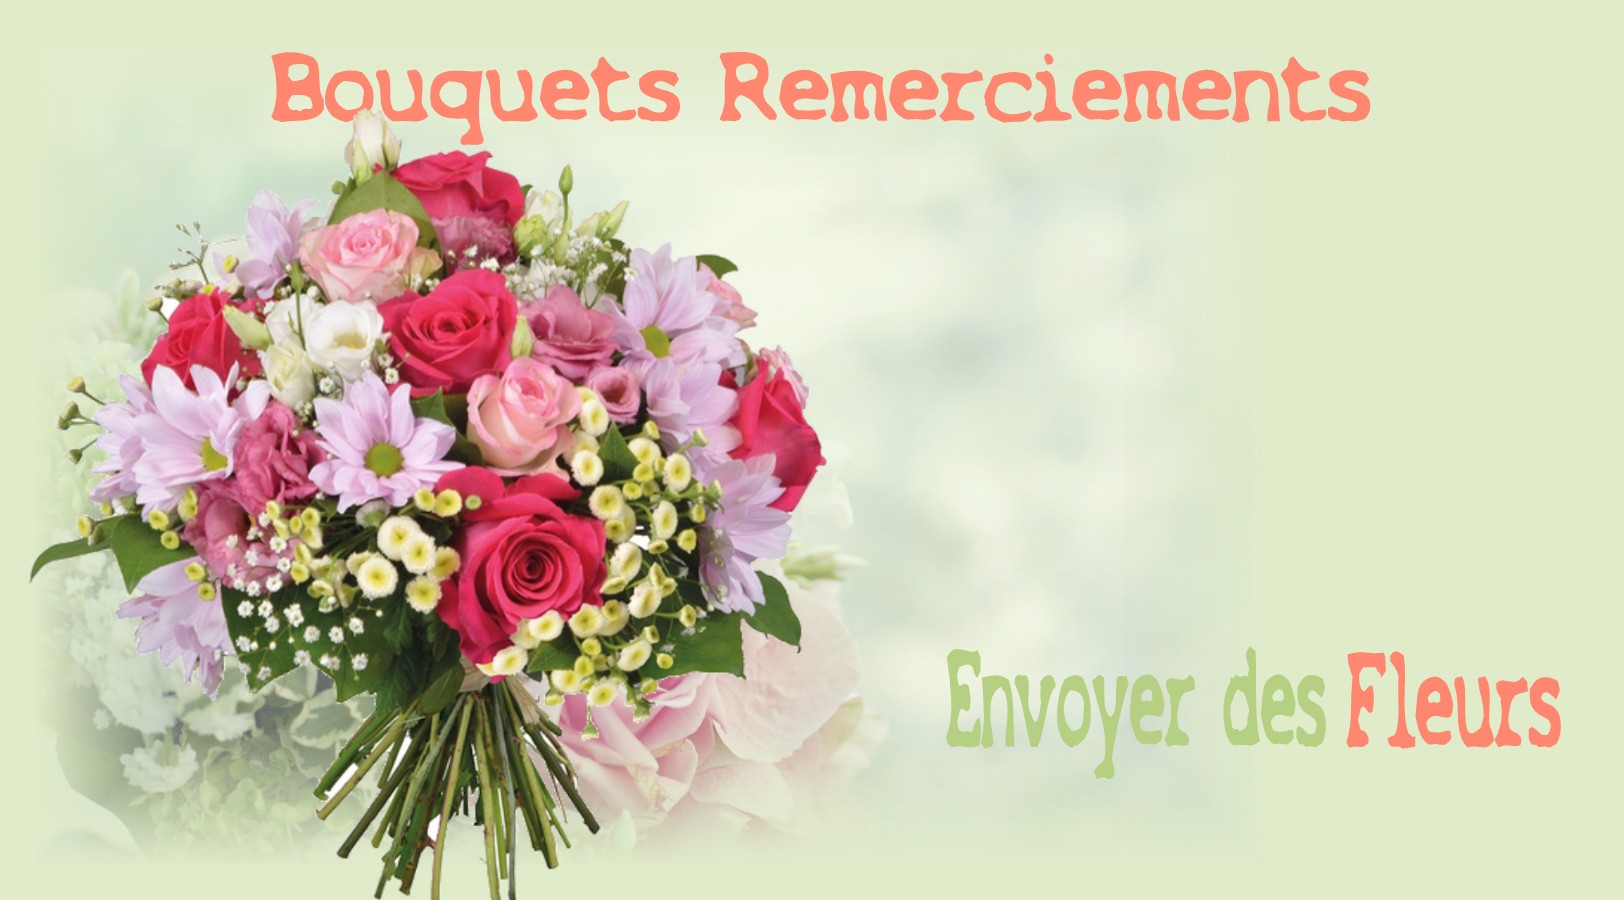 FLEURS POUR REMERCIEMENTS - FLEURISTE NANTES (44) - ENVOYER DES FLEURS